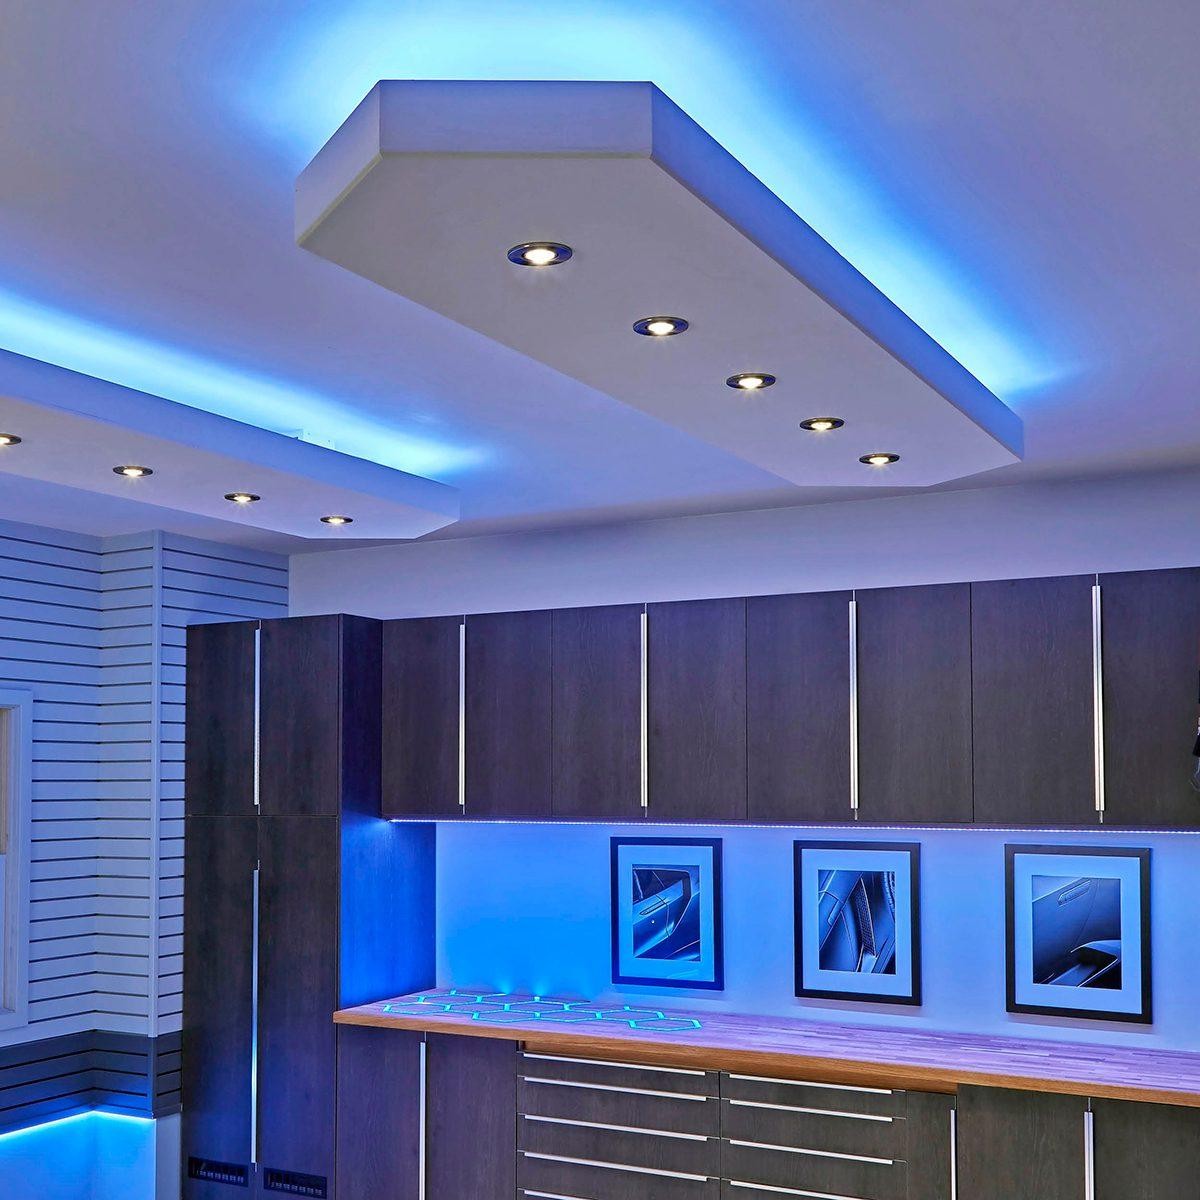 Una visión general de la tecnología y el diseño de módulos LED para electrodomésticos